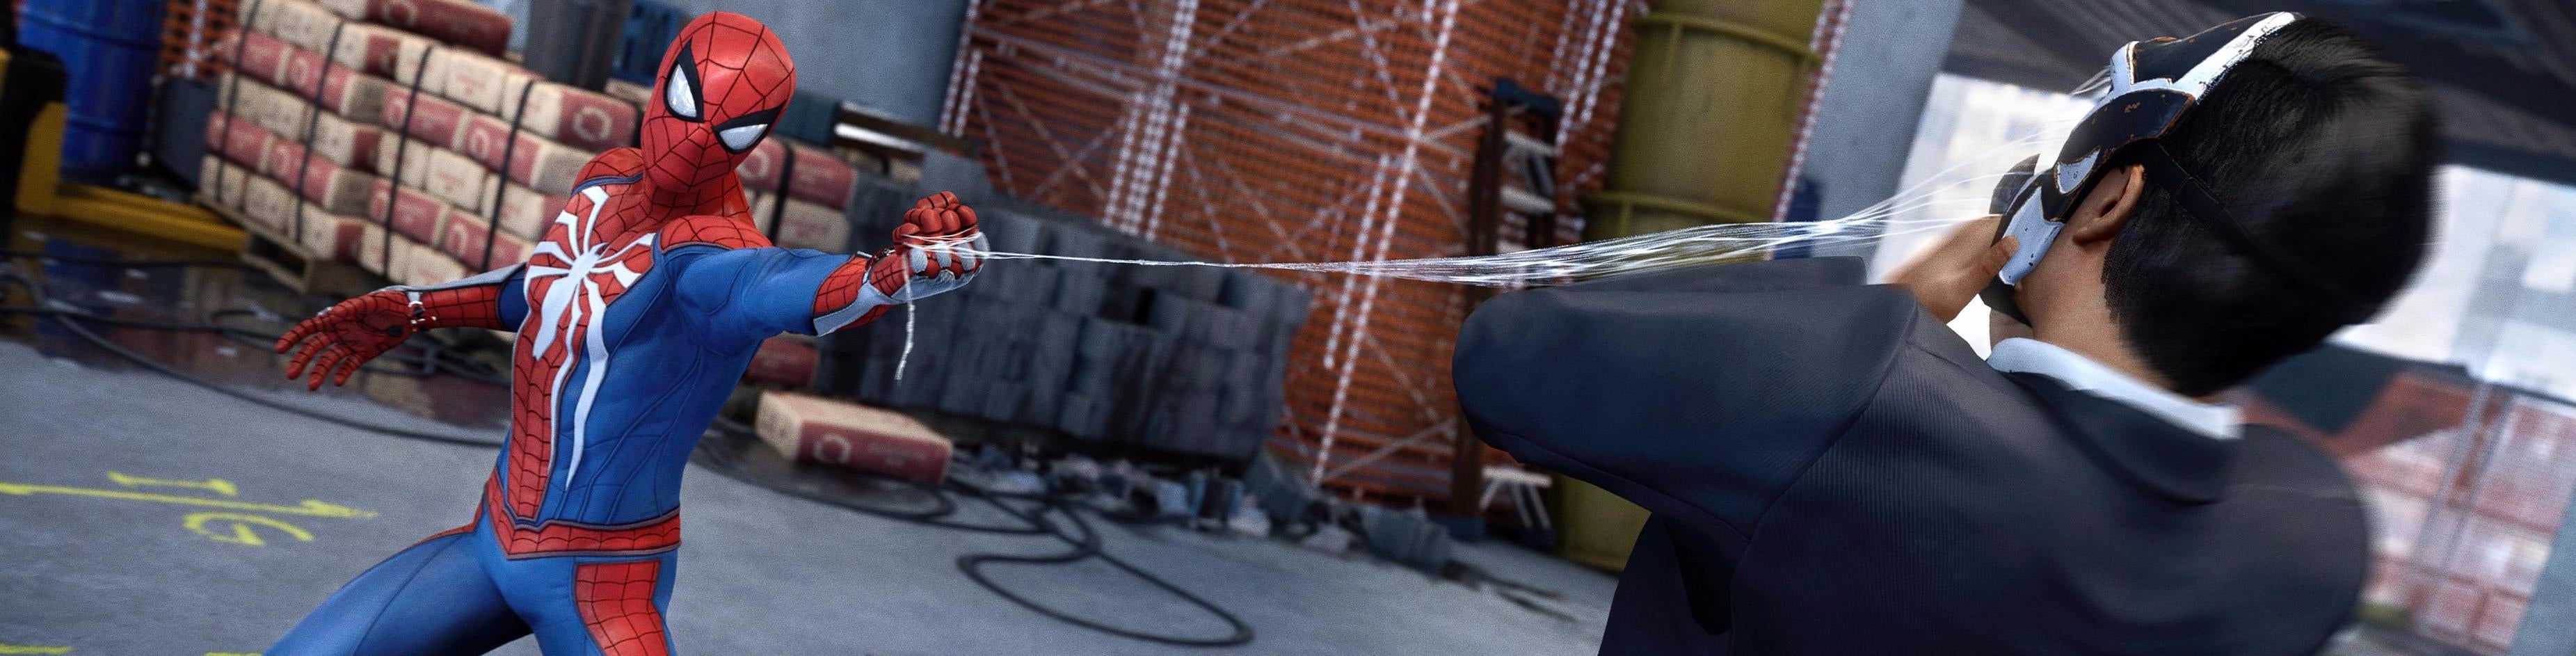 Immagine di Spider-Man raggiunge nuove vette su PS4 Pro - analisi tecnica